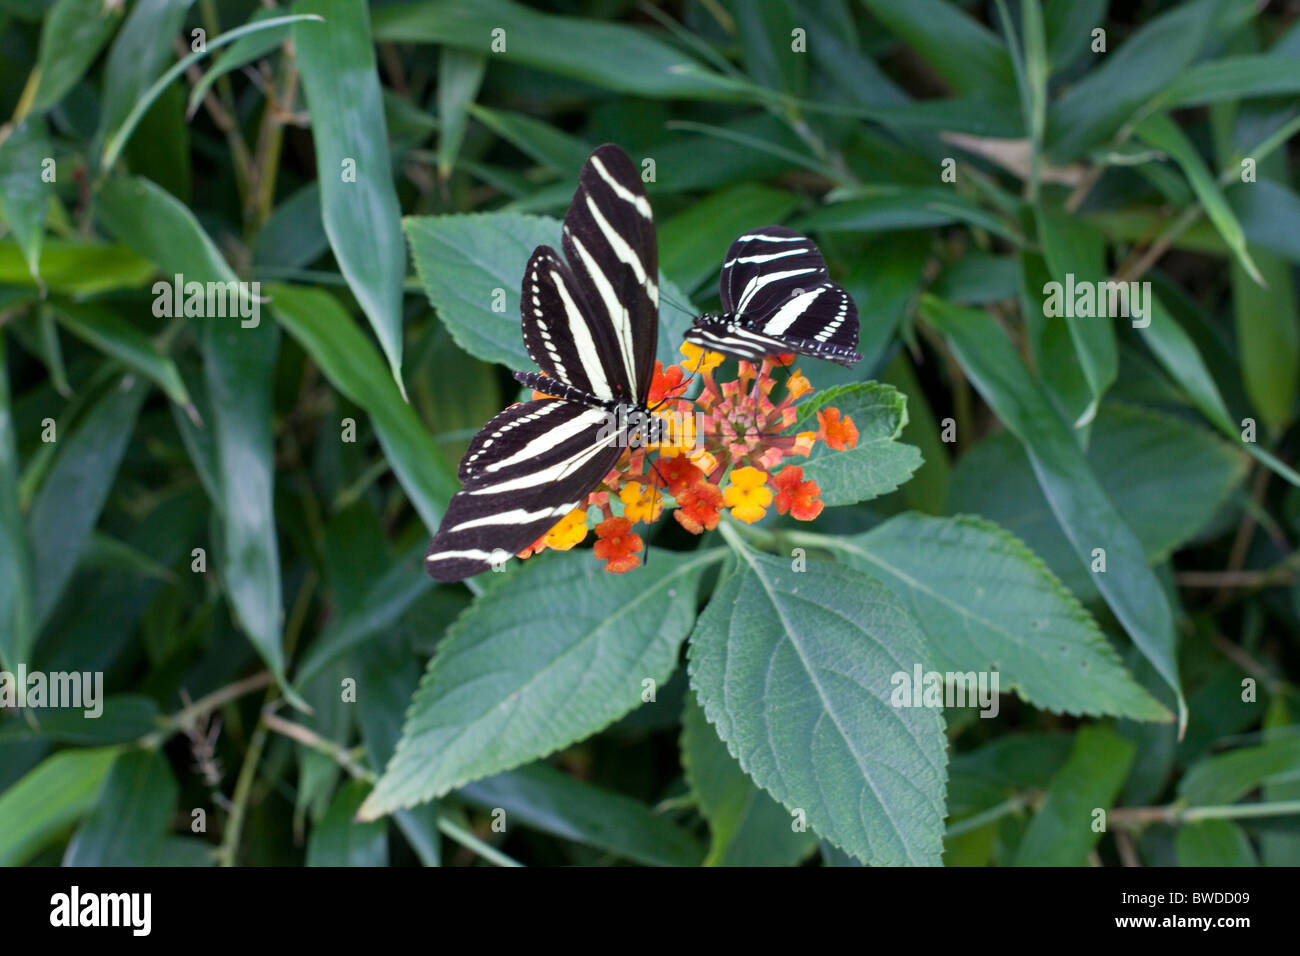 Siproeta stelenes Butterfly su foglie Foto Stock